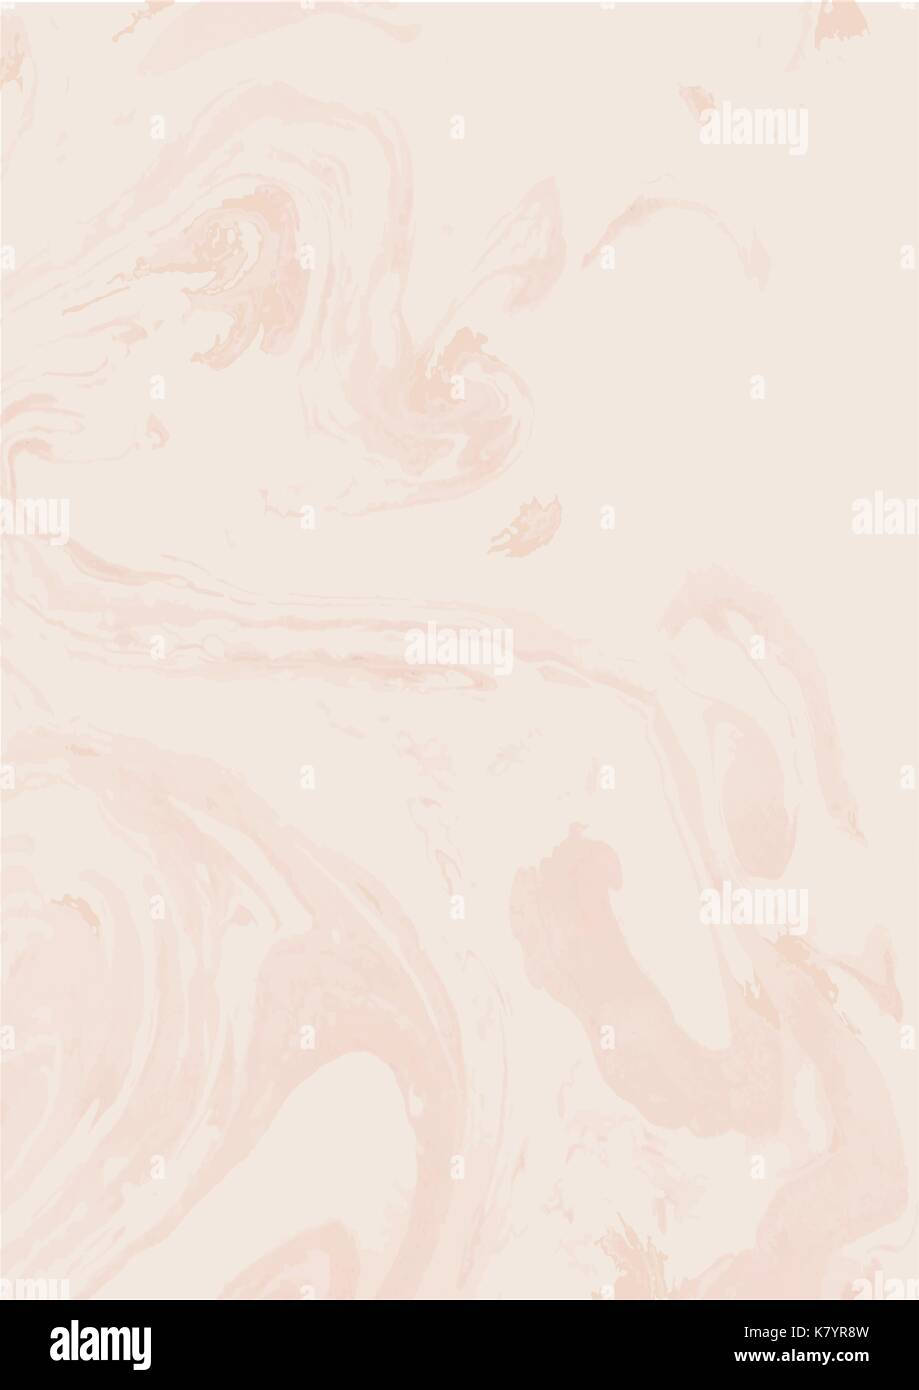 Unosfondo Di Marmo Rosa Con Vortici E Più Vortici - Immagine Di Stock Sfondo